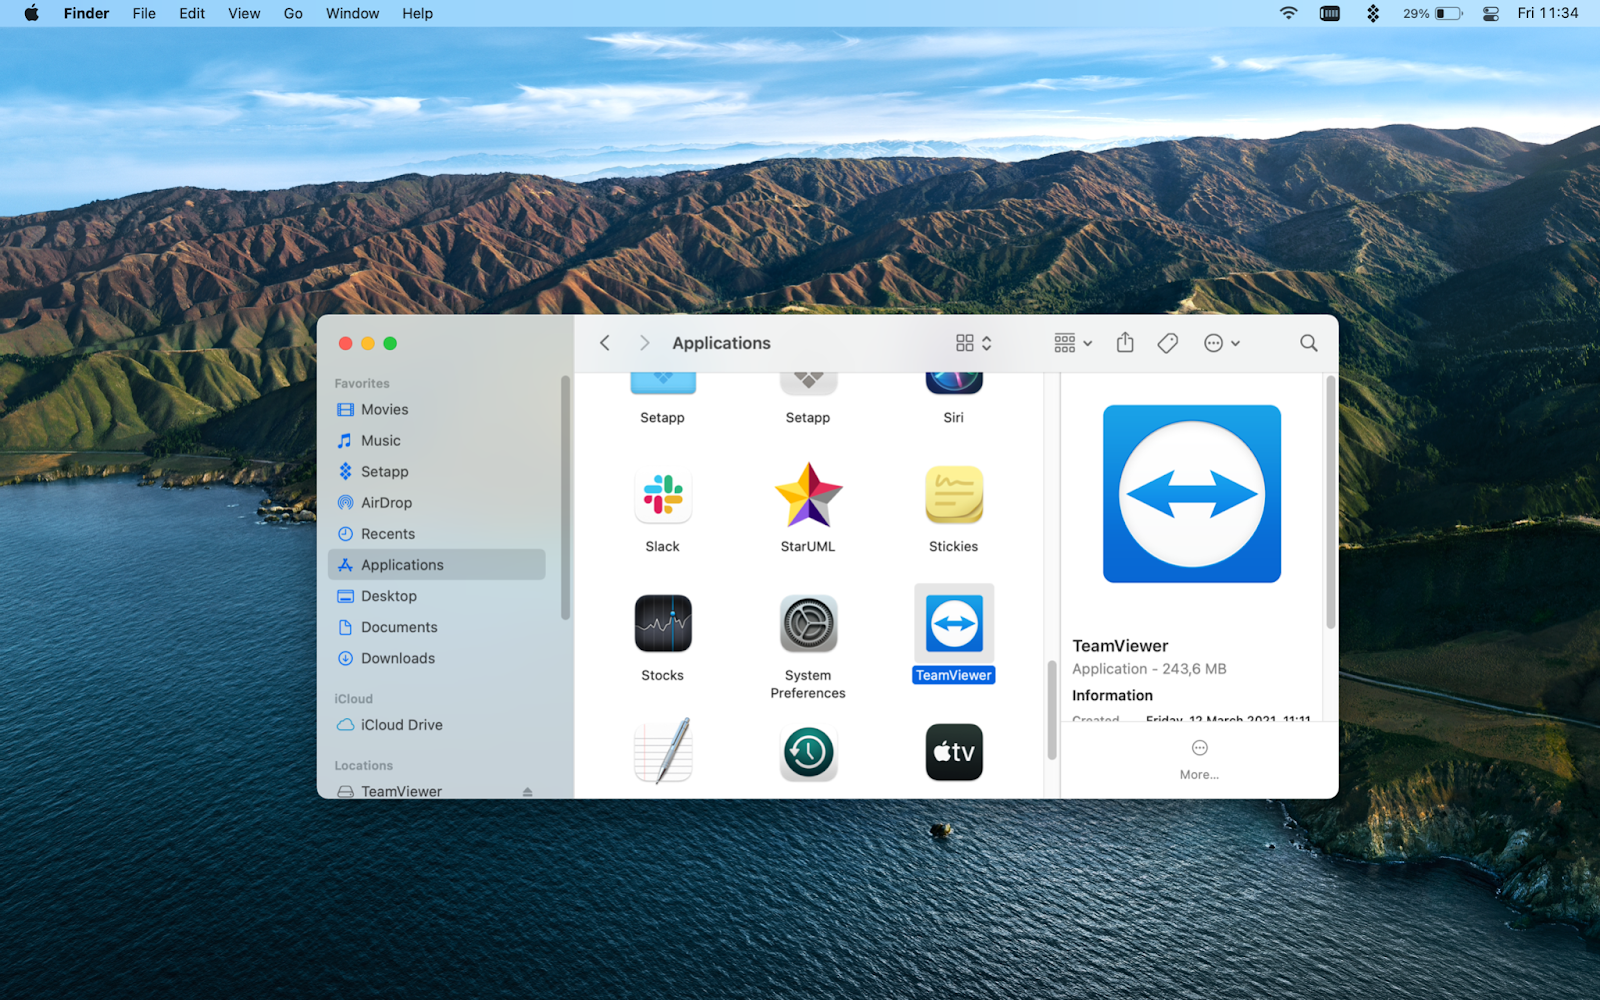 teamviewer for mac 10.6.8